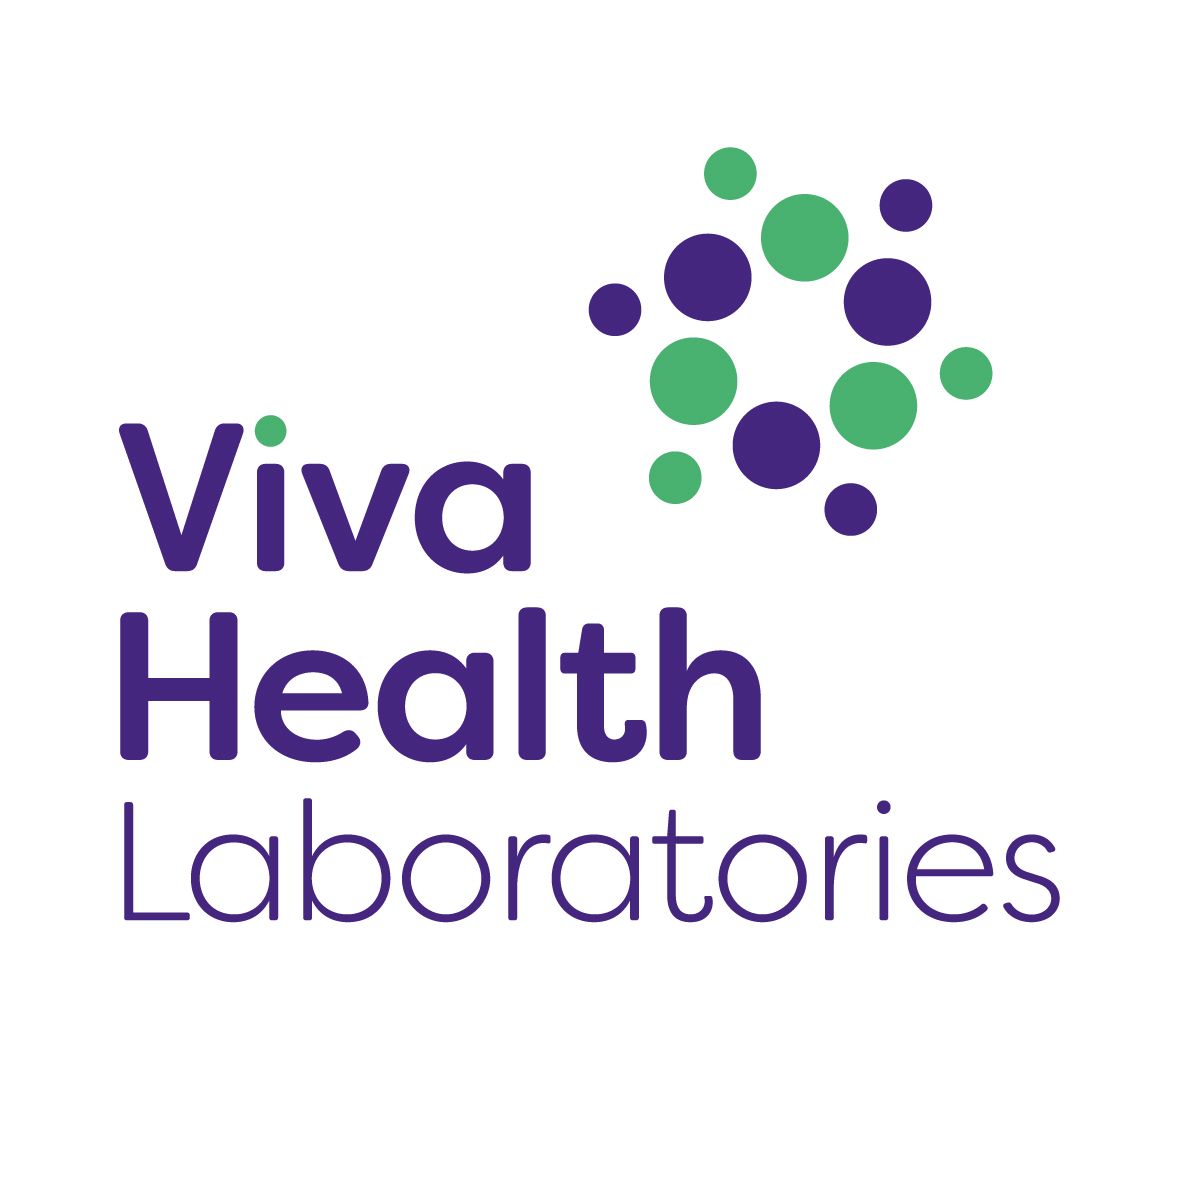 Viva Health Laboratories